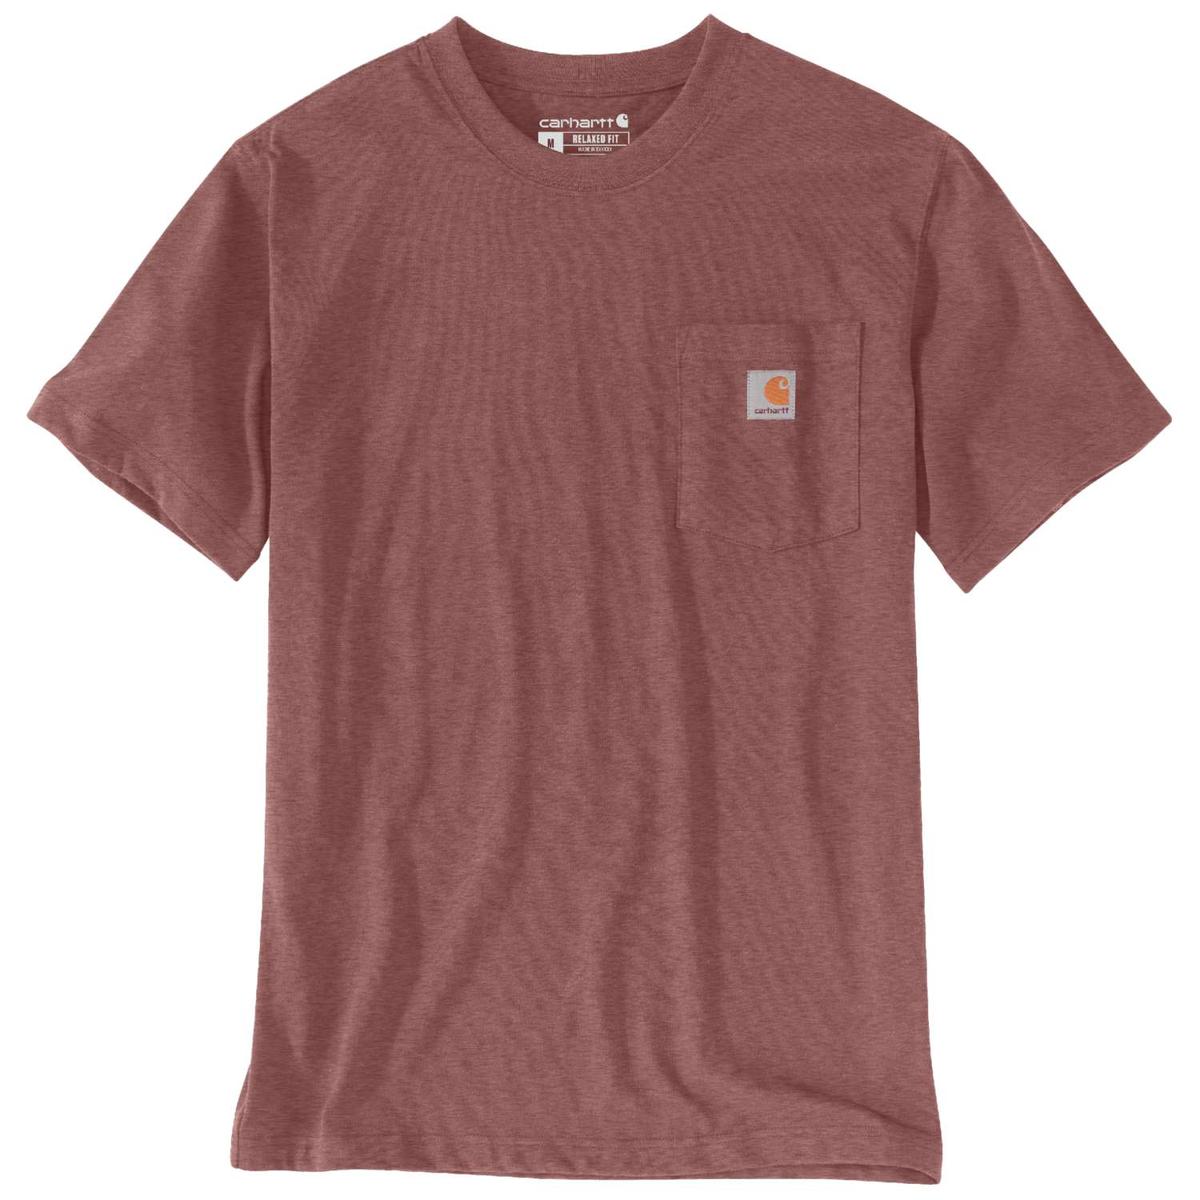 Carhartt T-Shirt mit Brusttasche - 35